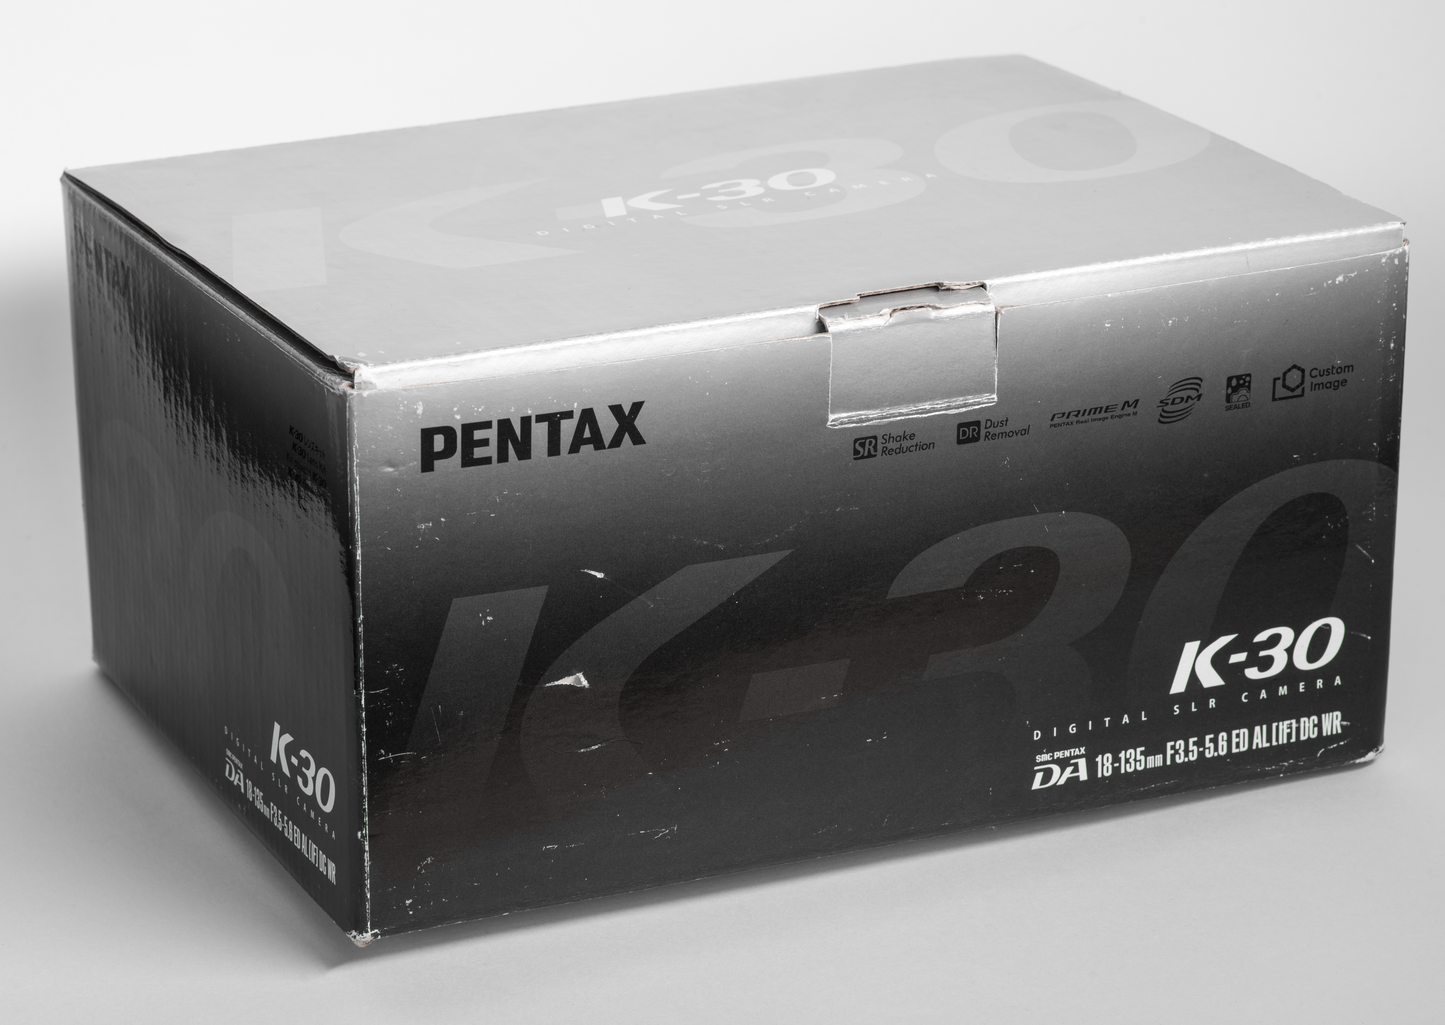 Pentax K-30 Digital Single-Lens Reflex Camera